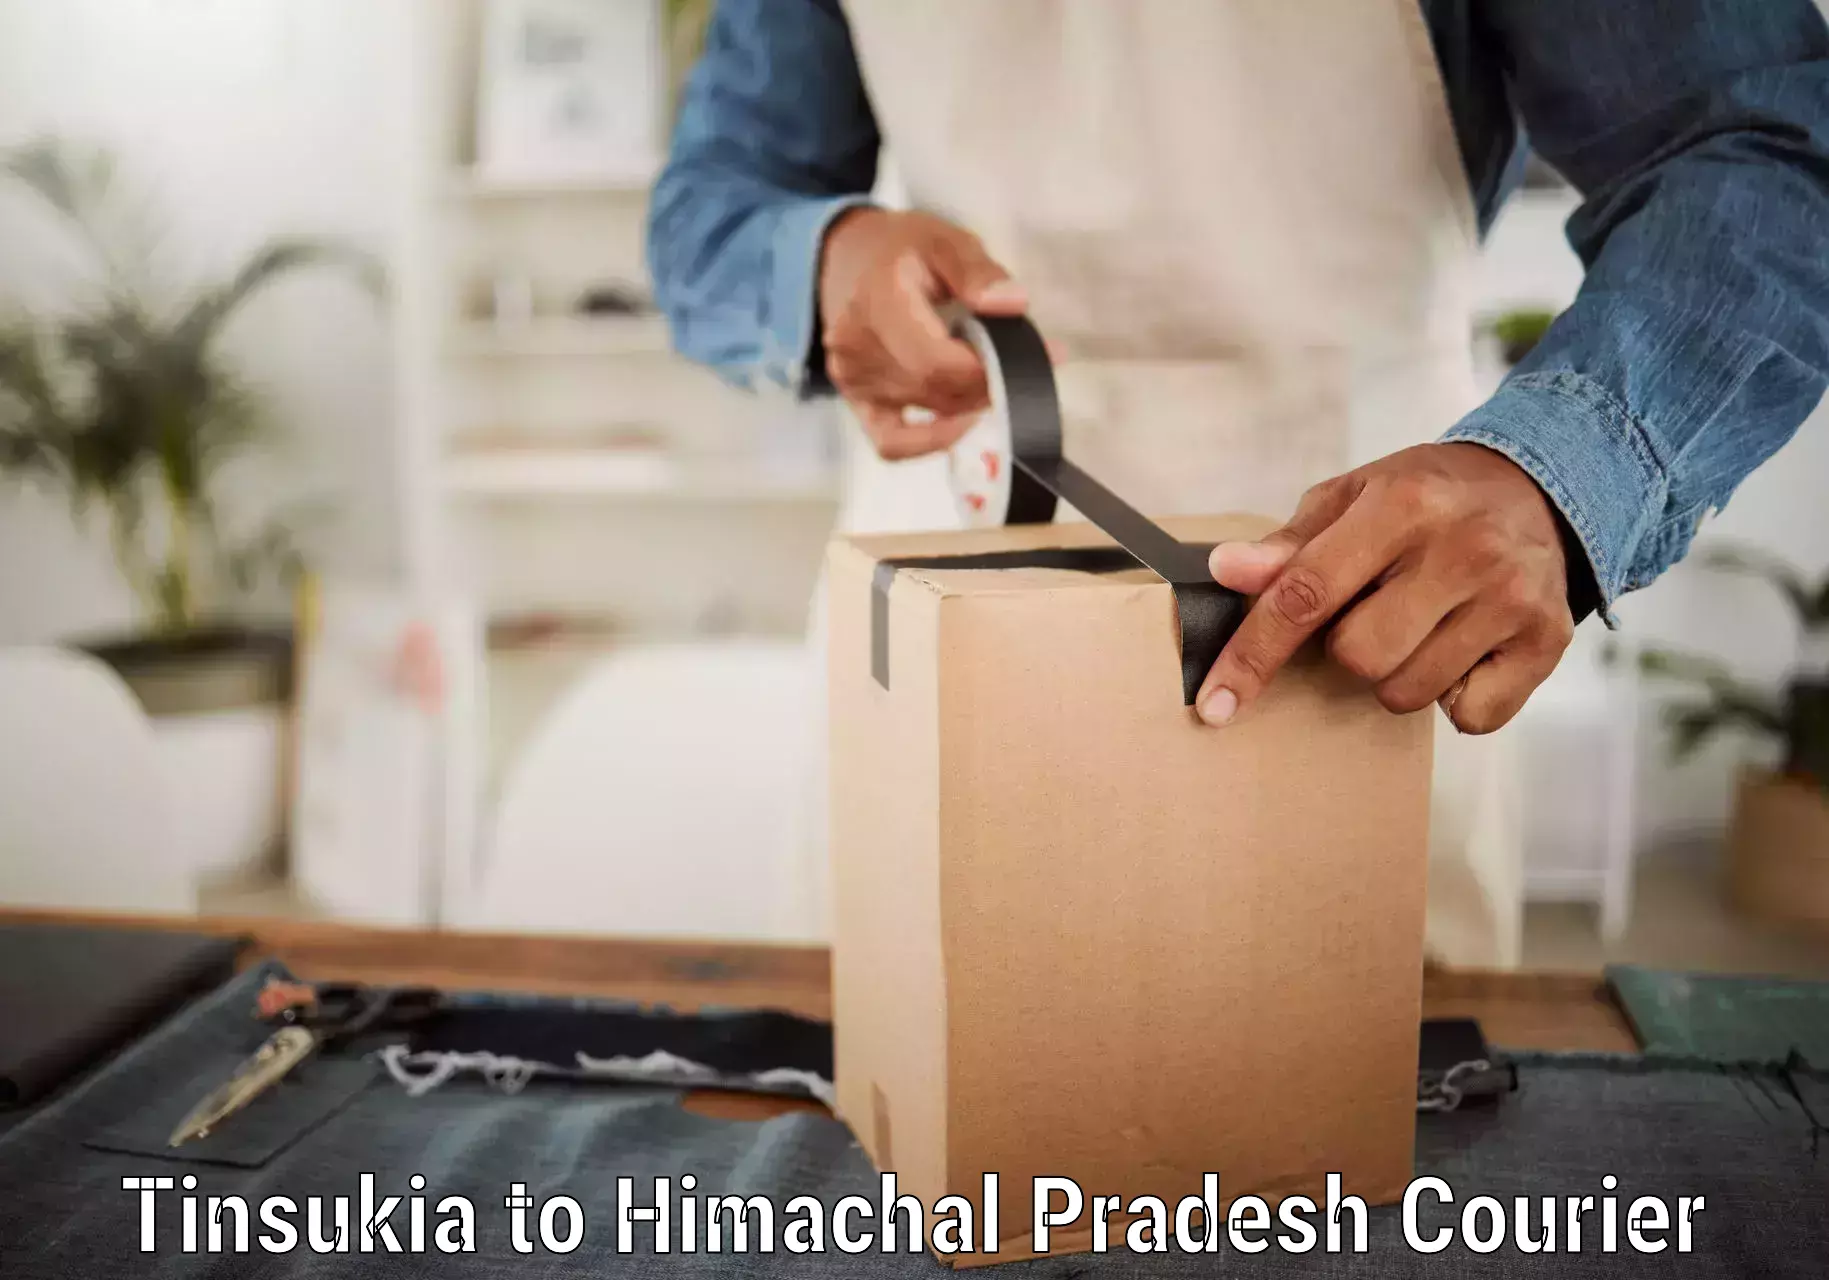 Customer-focused courier Tinsukia to Himachal Pradesh